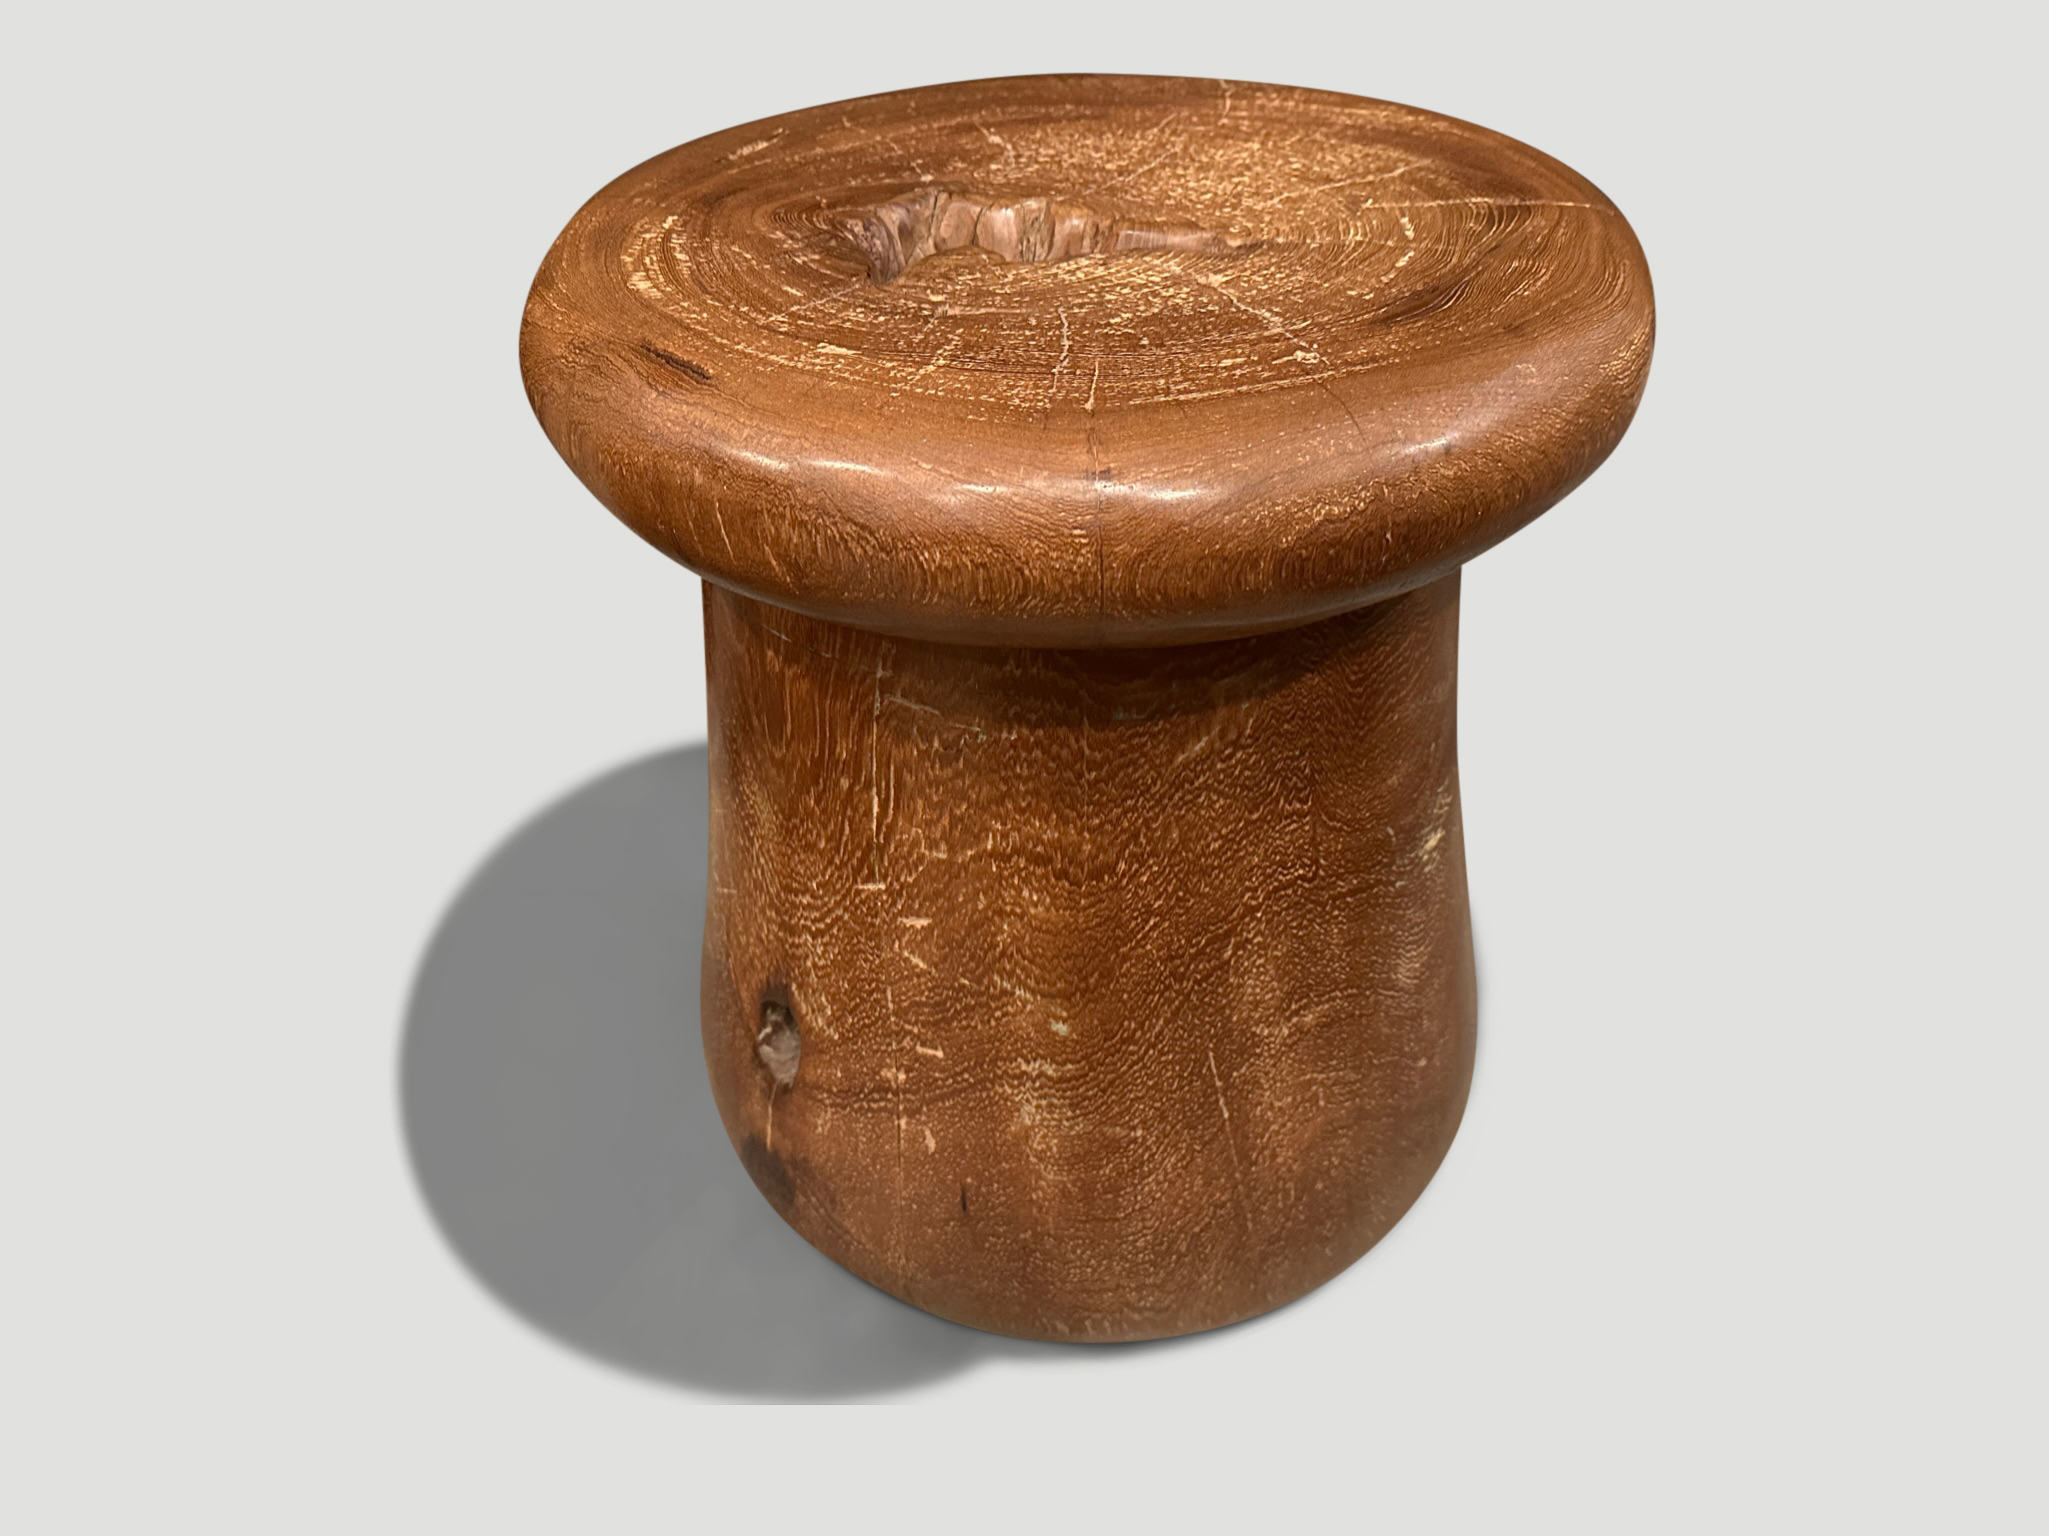 CENTURY OLD TEAK WOOD SIDE TABLE OR STOOL